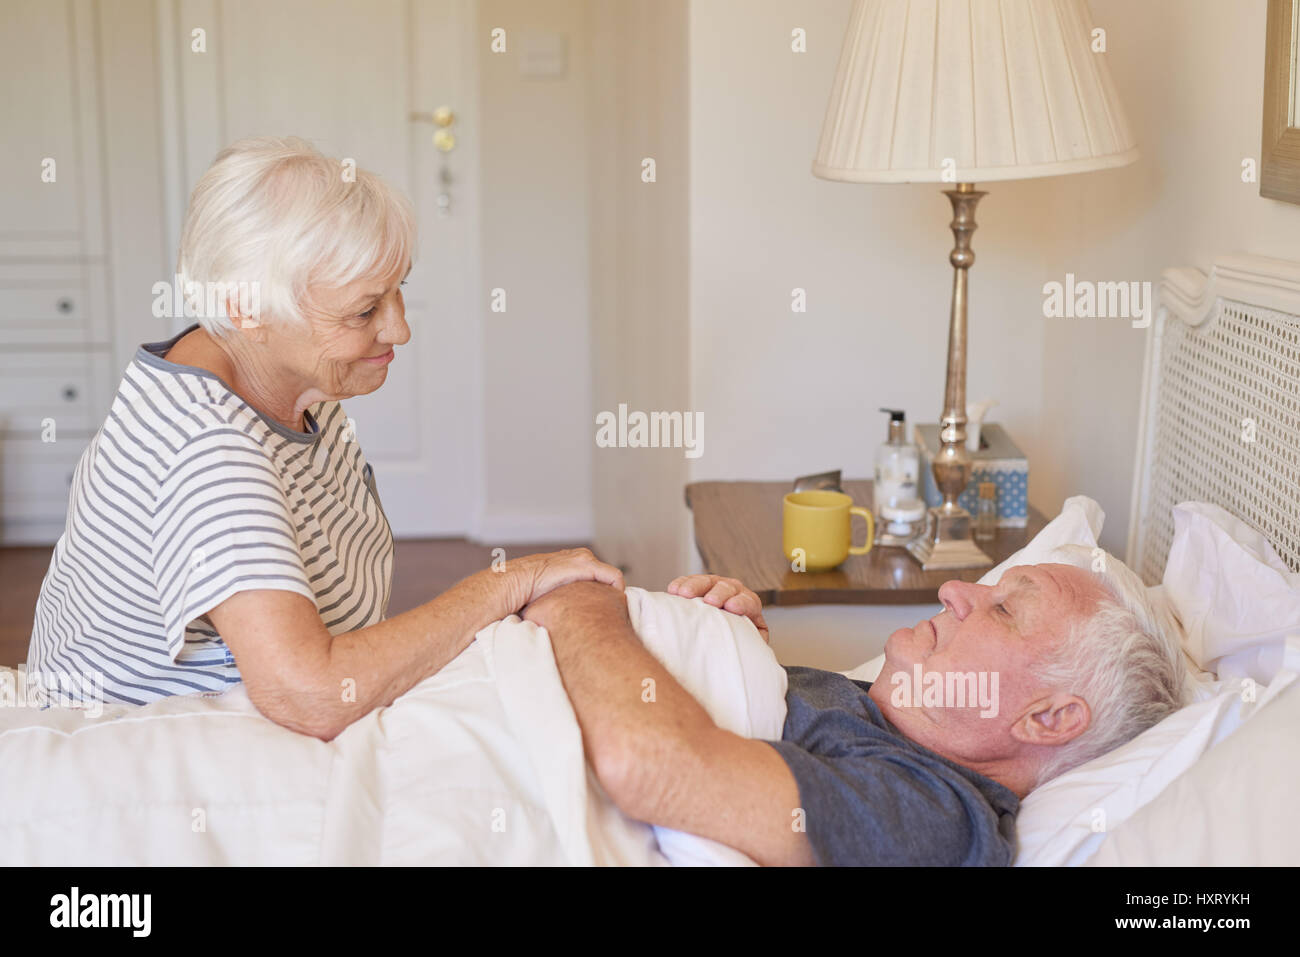 Hauts femme prendre soin de son mari malade au lit Banque D'Images